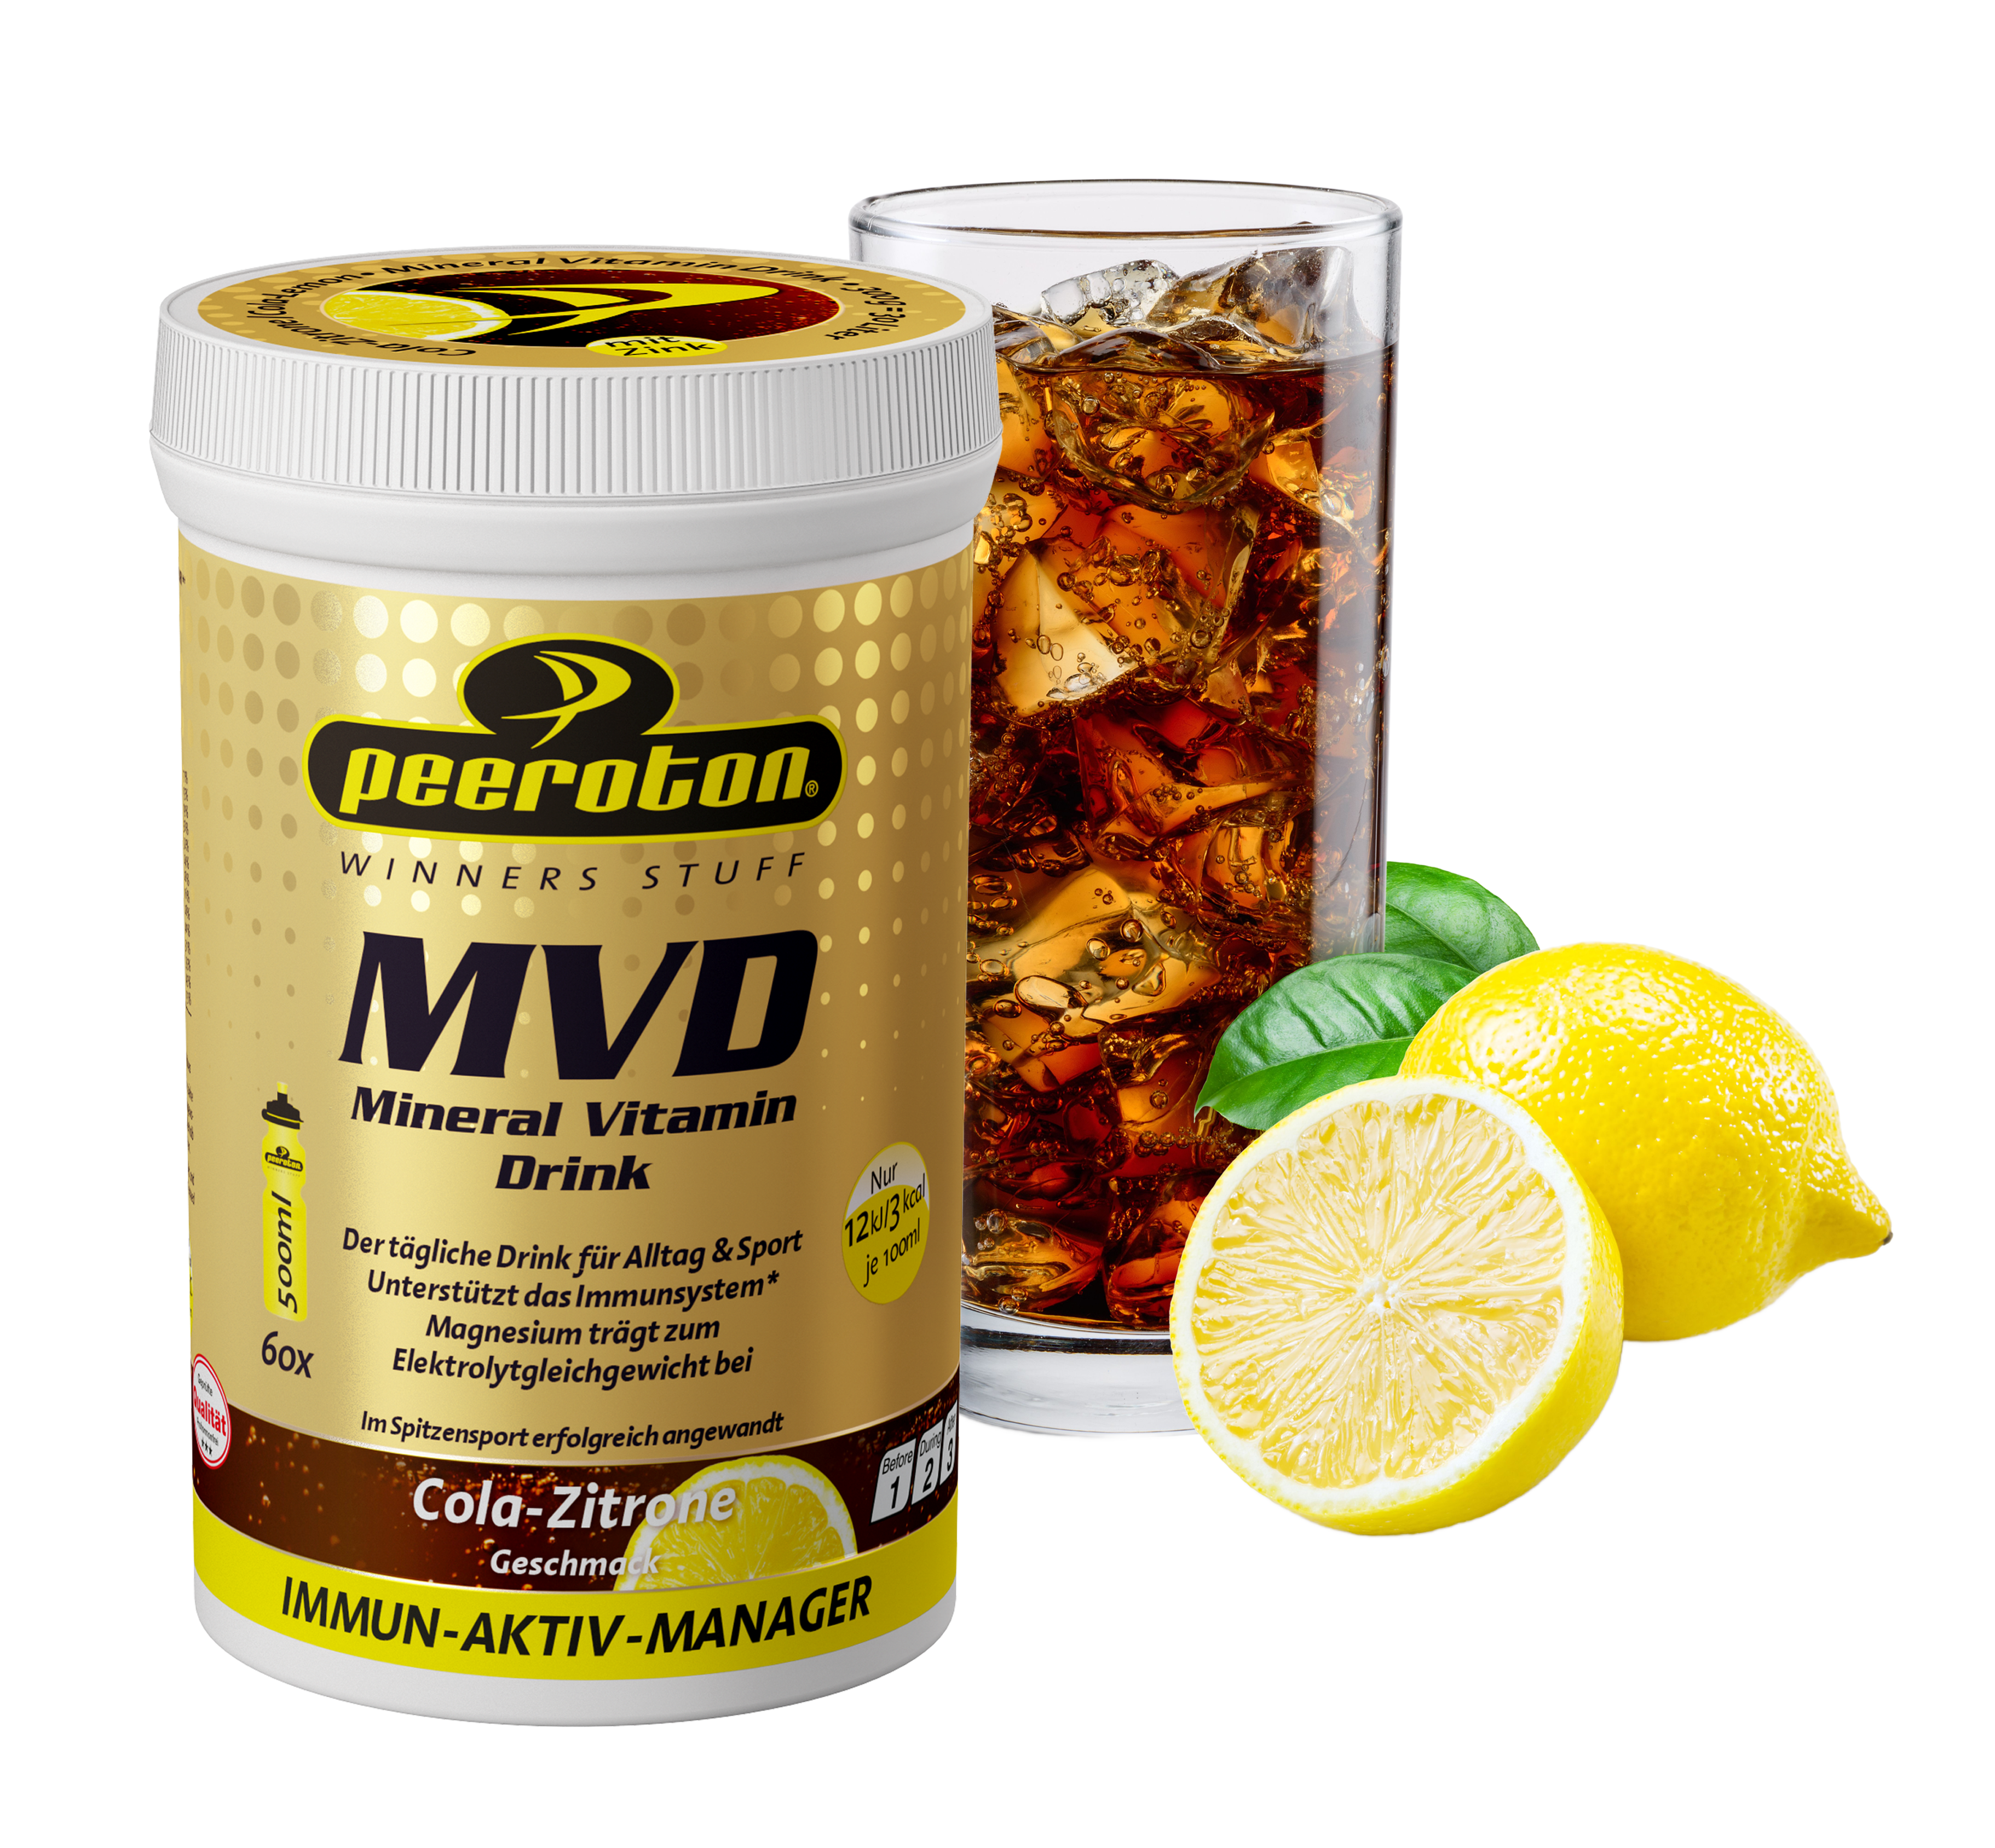 MVD - Mineral Vitamin Drink Sportcola -Zitrone 300g  